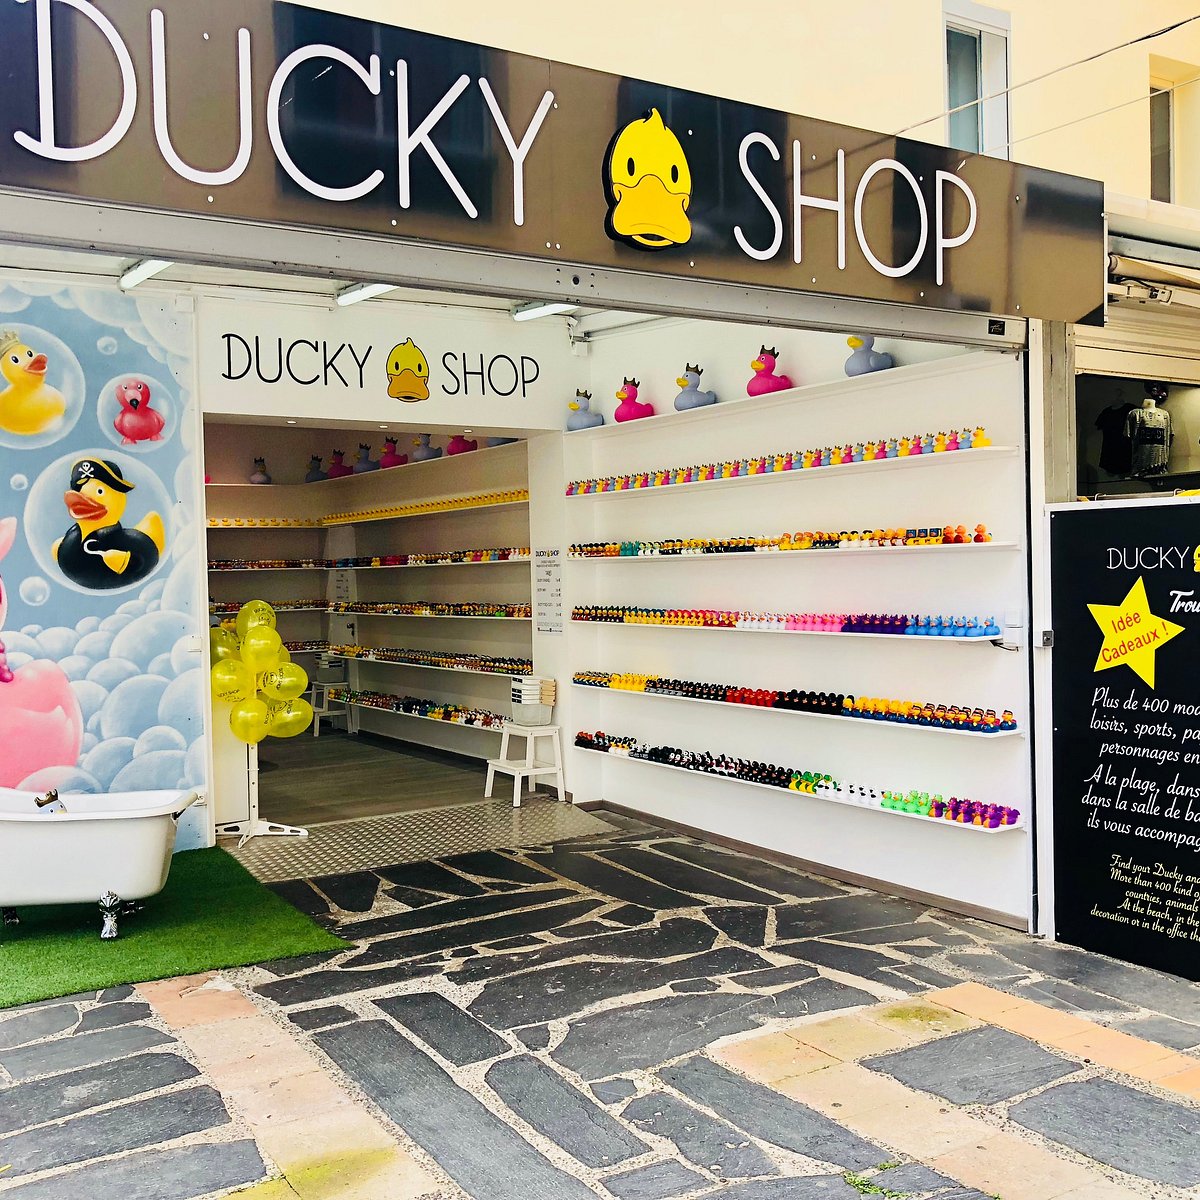 Ducky shop промокод. Duck shop.